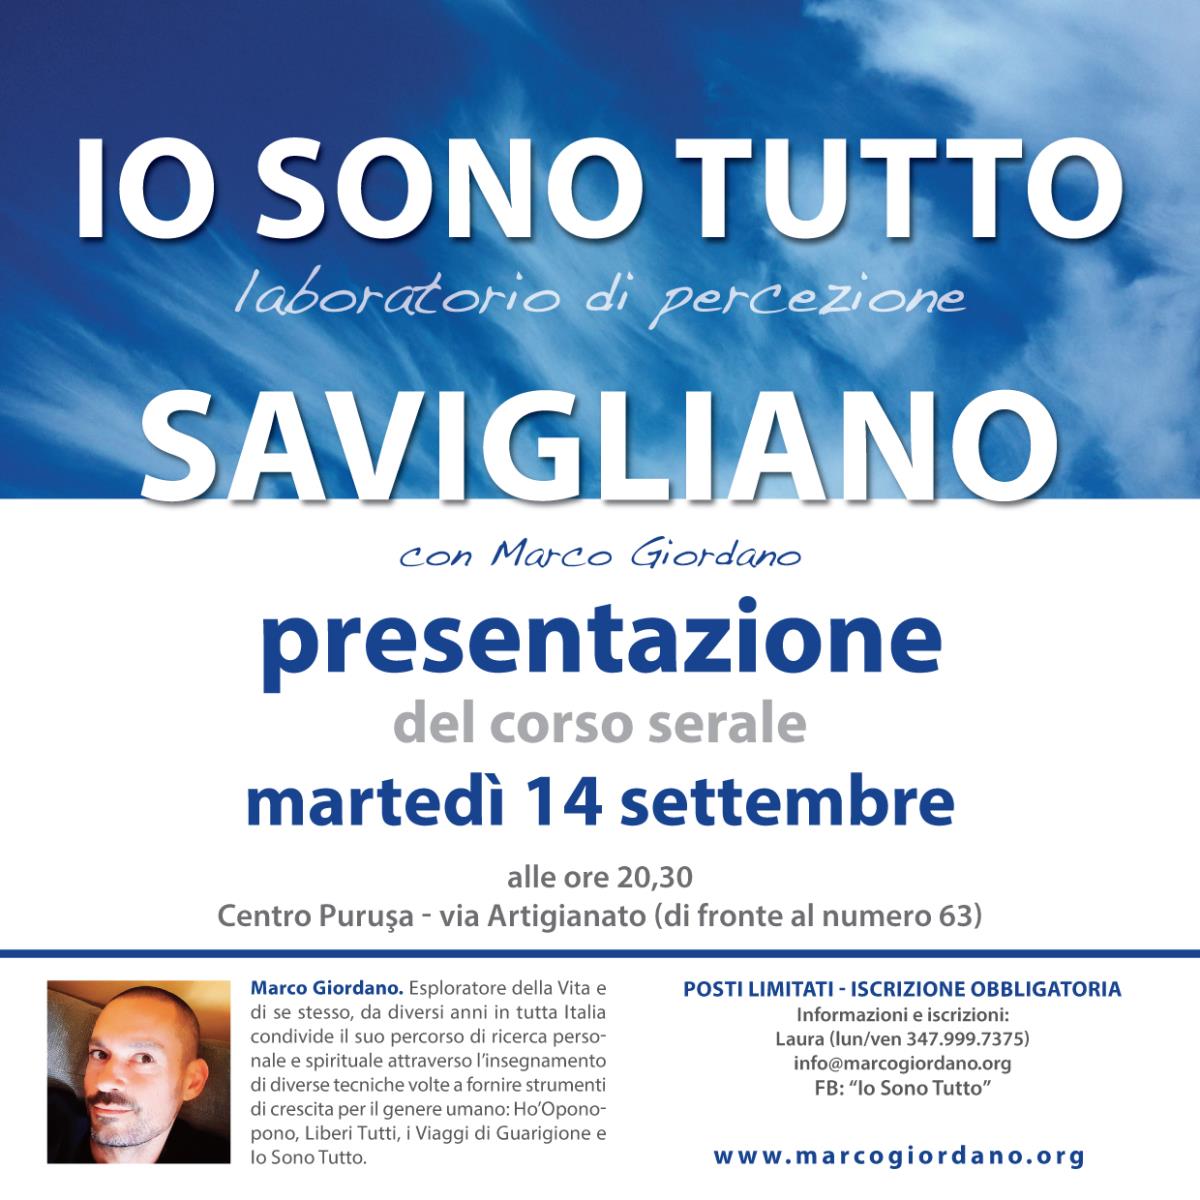 Presentazione del corso serale <b>IO SONO TUTTO</b> marted 14 settembre <b>SAVIGLIANO (Cuneo)